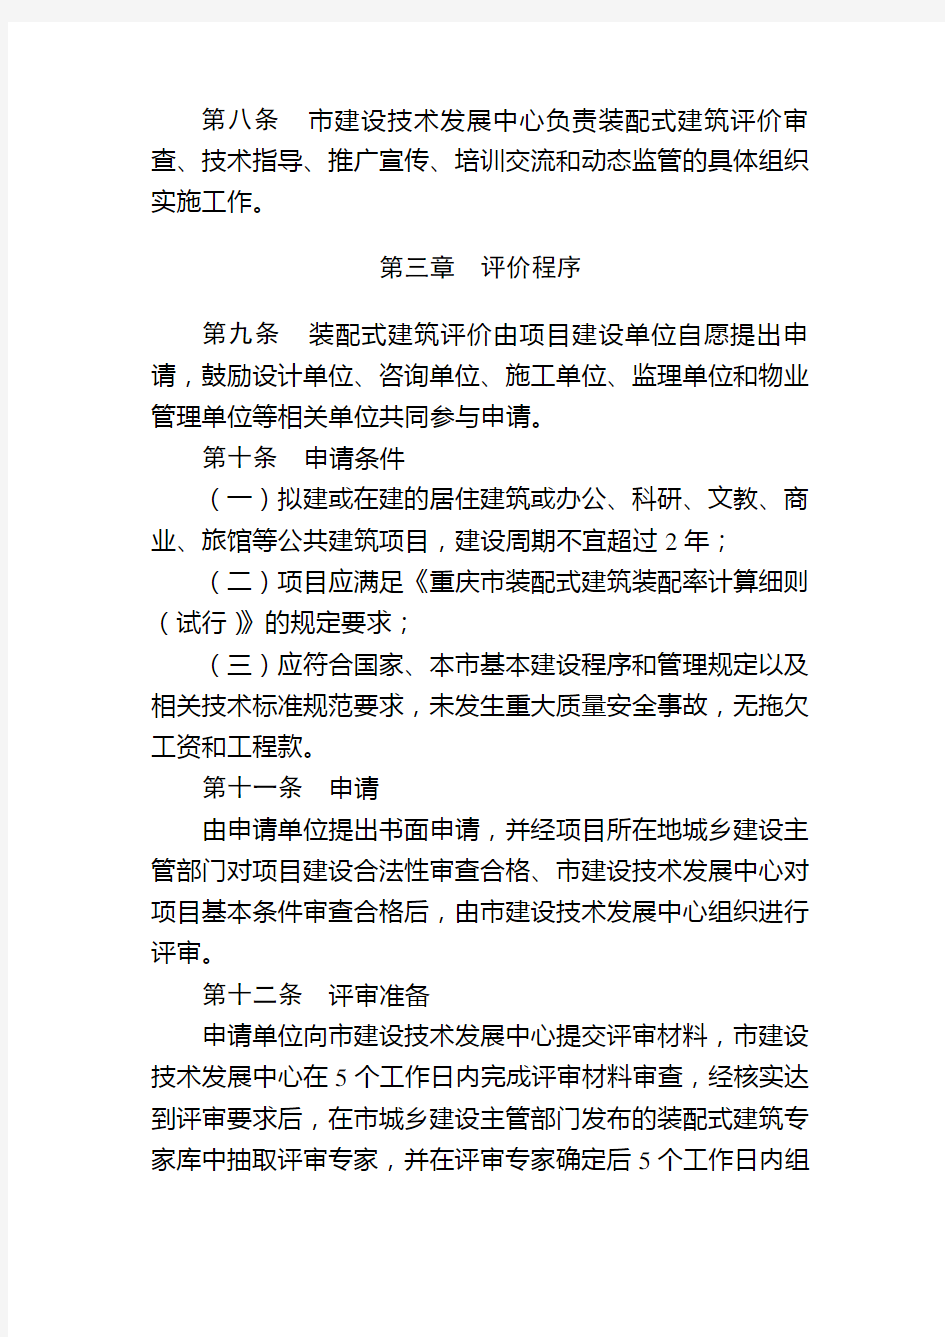 重庆市装配式建筑评价管理办法